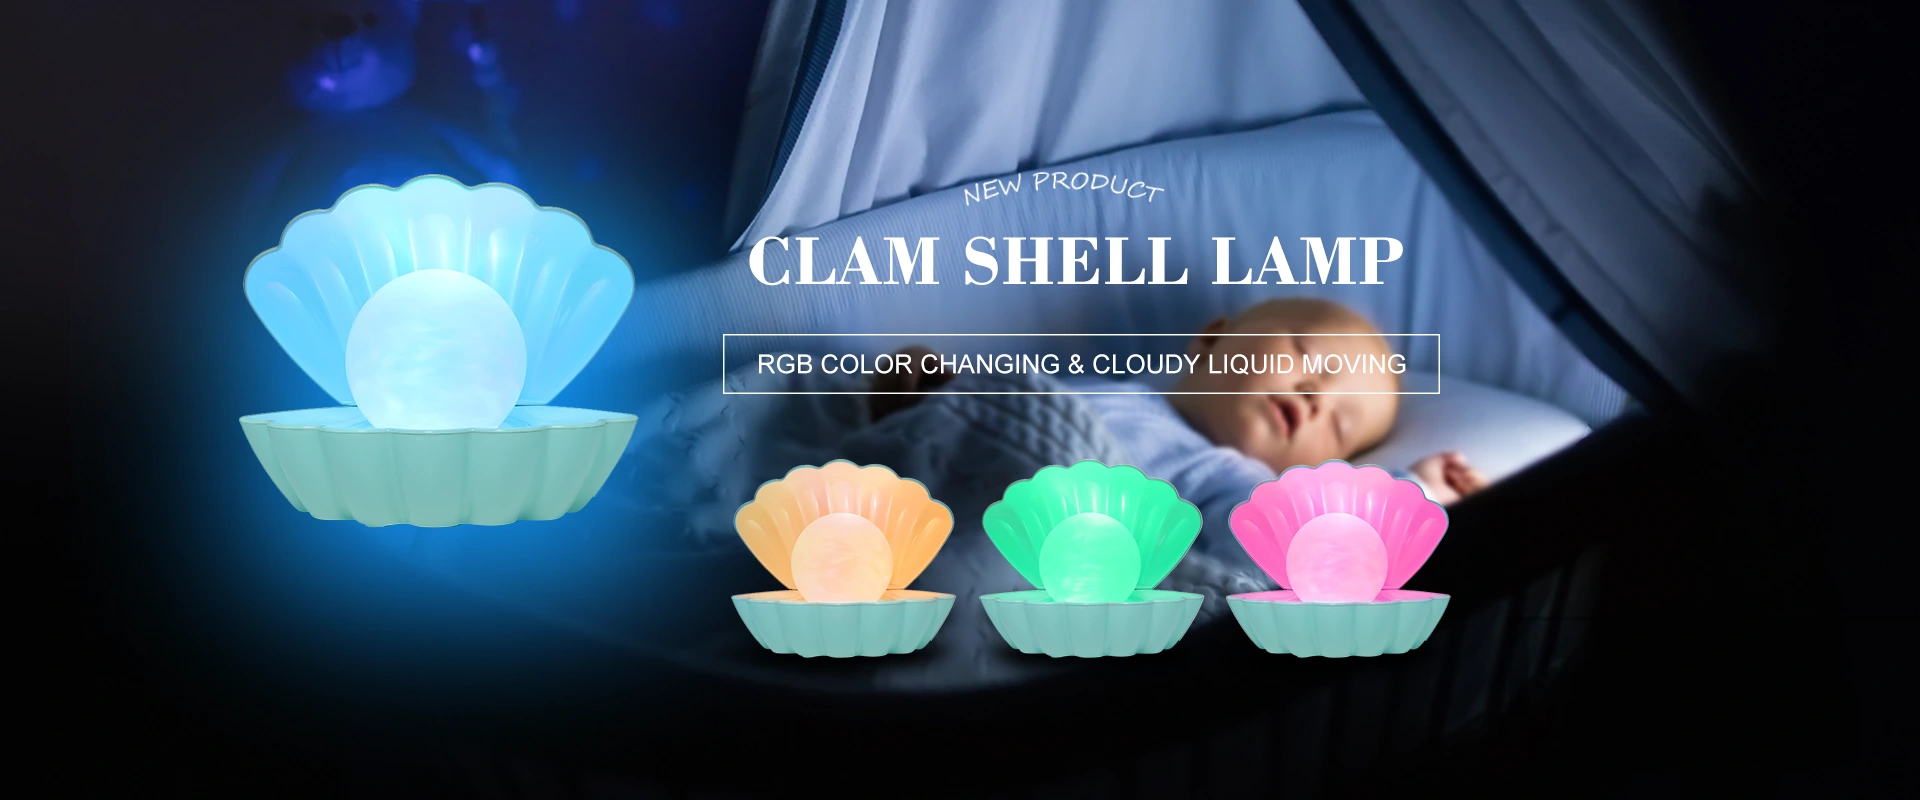 Pabrika ng Clamp Lamp